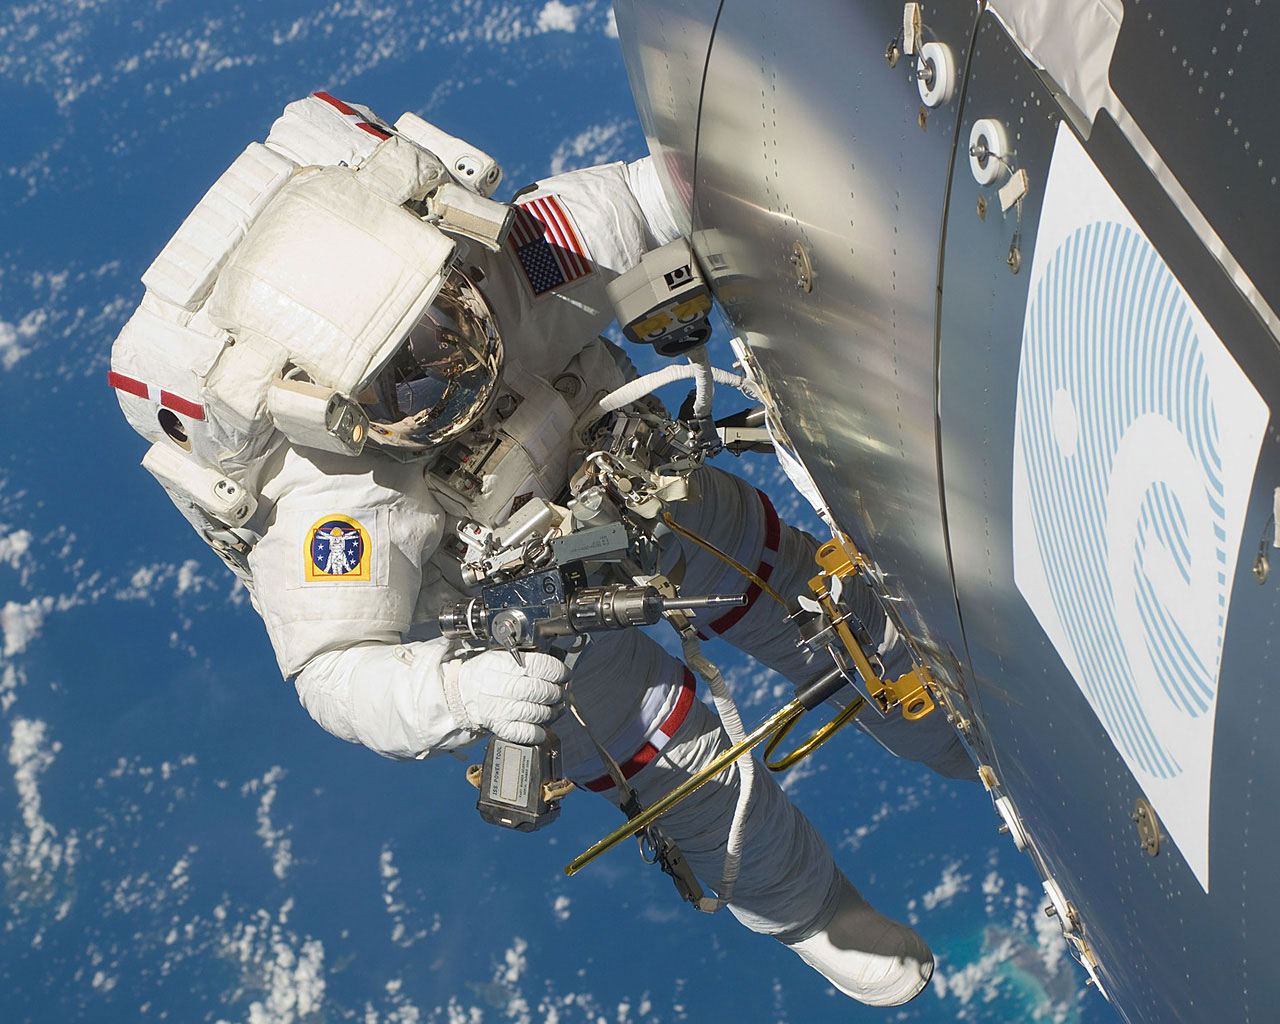 Astronaut popravlja kvar na svemirskoj postaji. Nalazi se bestežinskom stanju, u svemirskom prostoru.